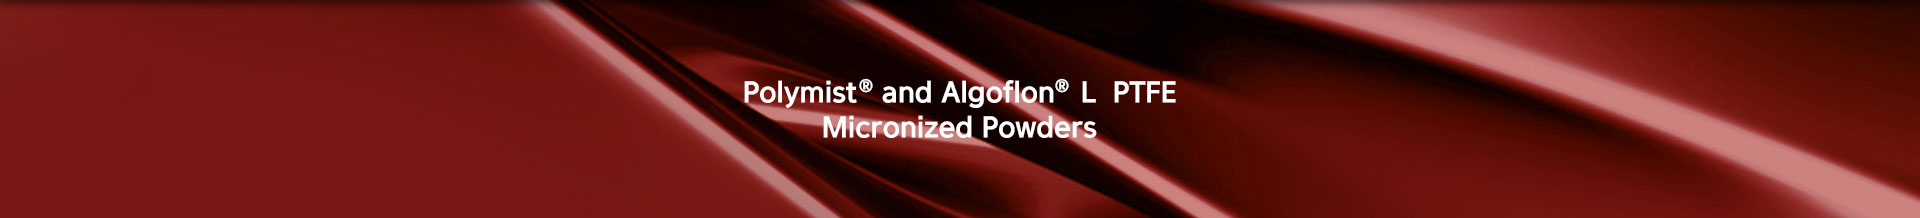 polymist and algoflon l ptpe micronized powders